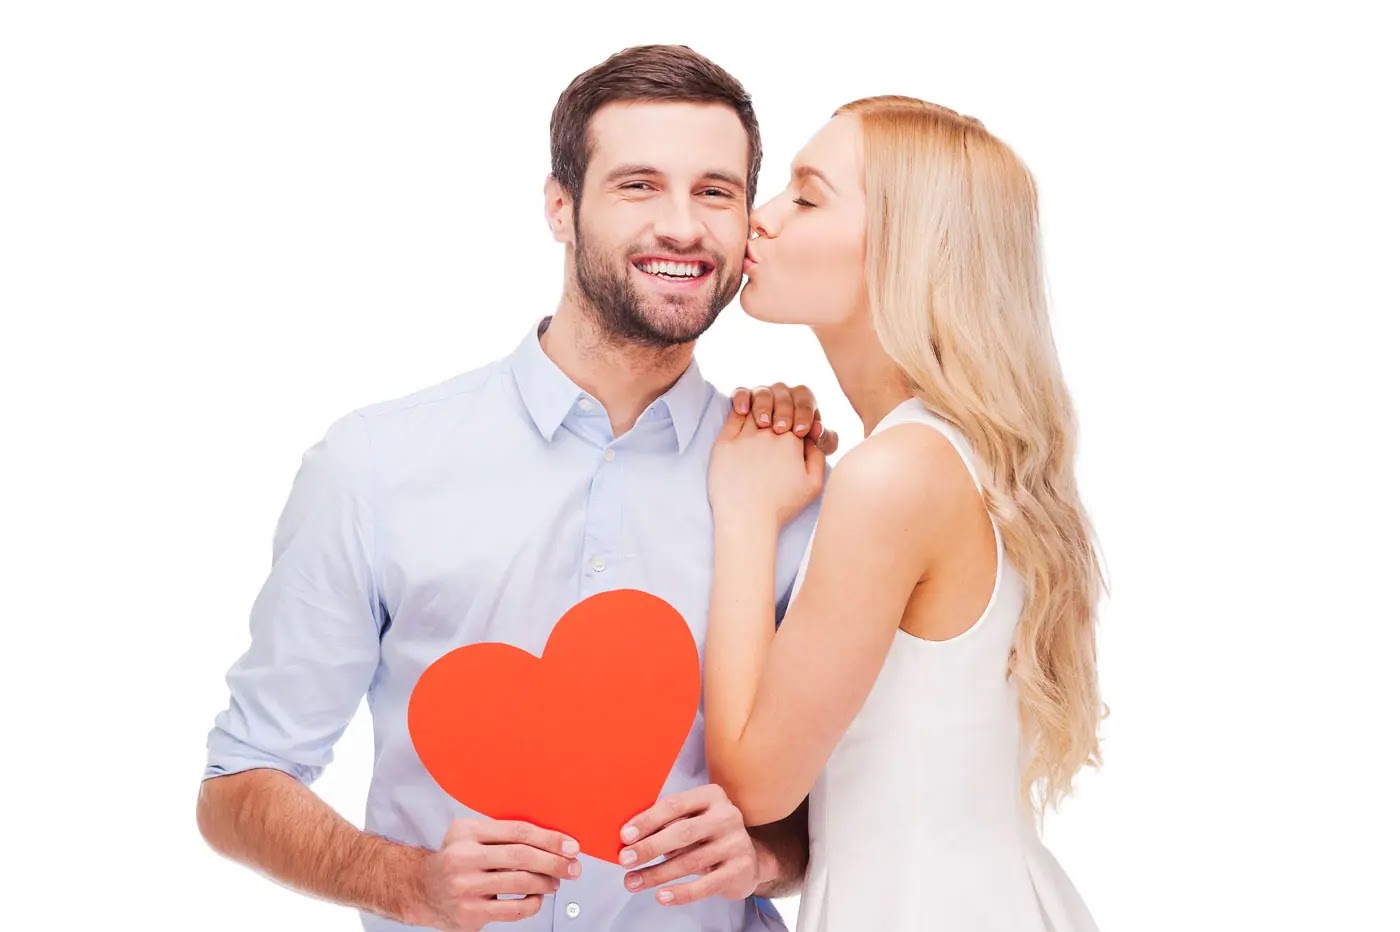 Reconquistando a tu hombre: cómo ser atractiva y evitar errores comunes